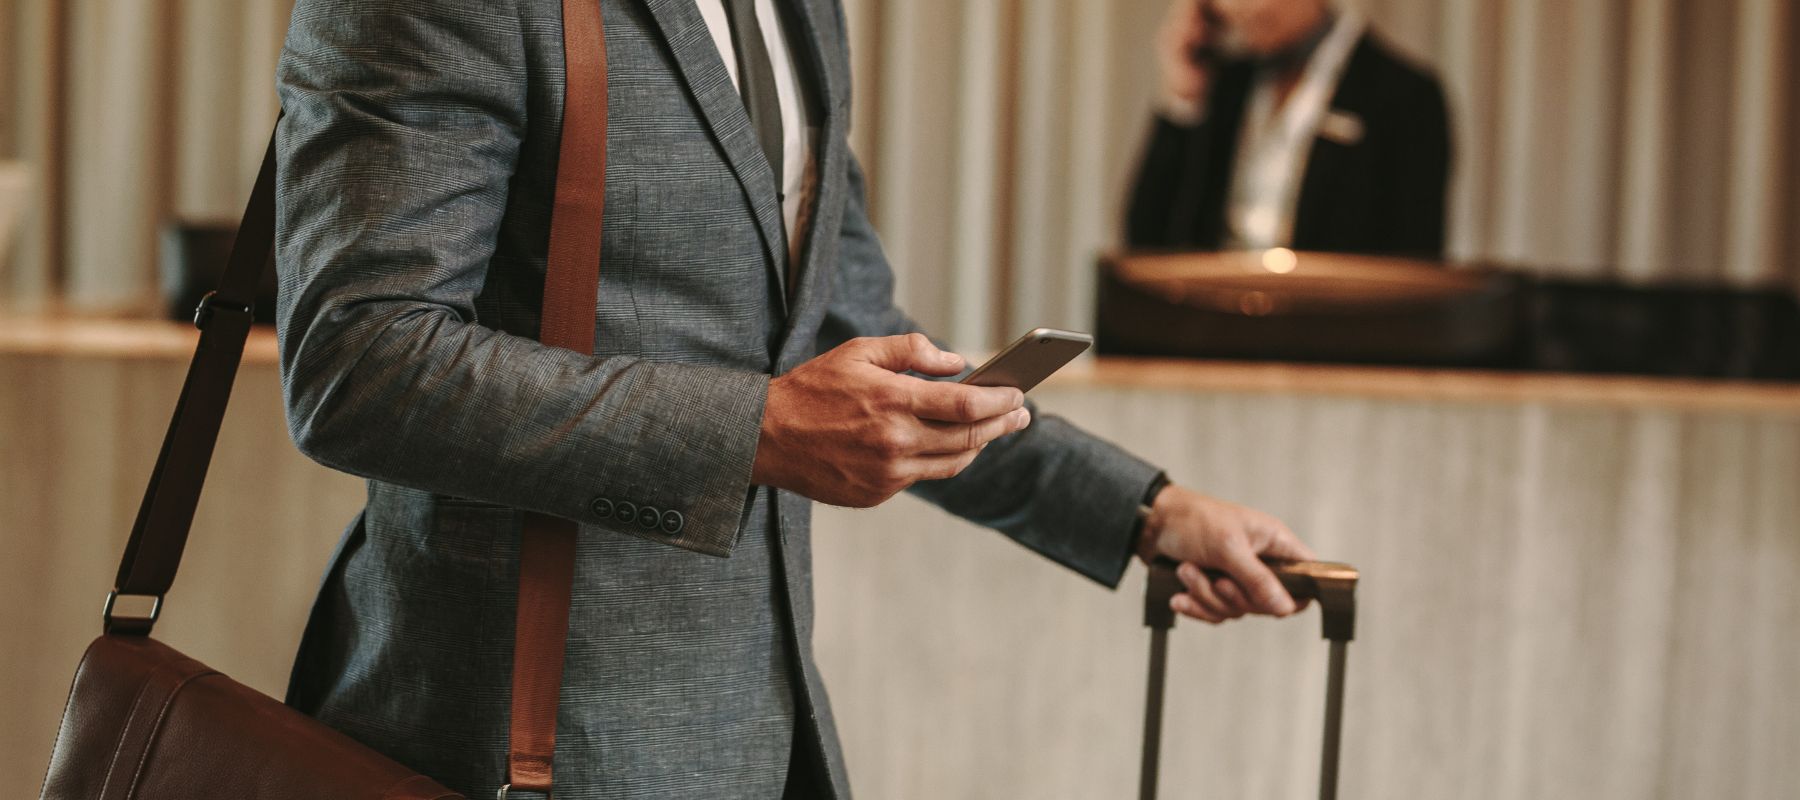 Ein Mann im Anzug läuft durch ein Hotel und schaut auf sein Smartphone.